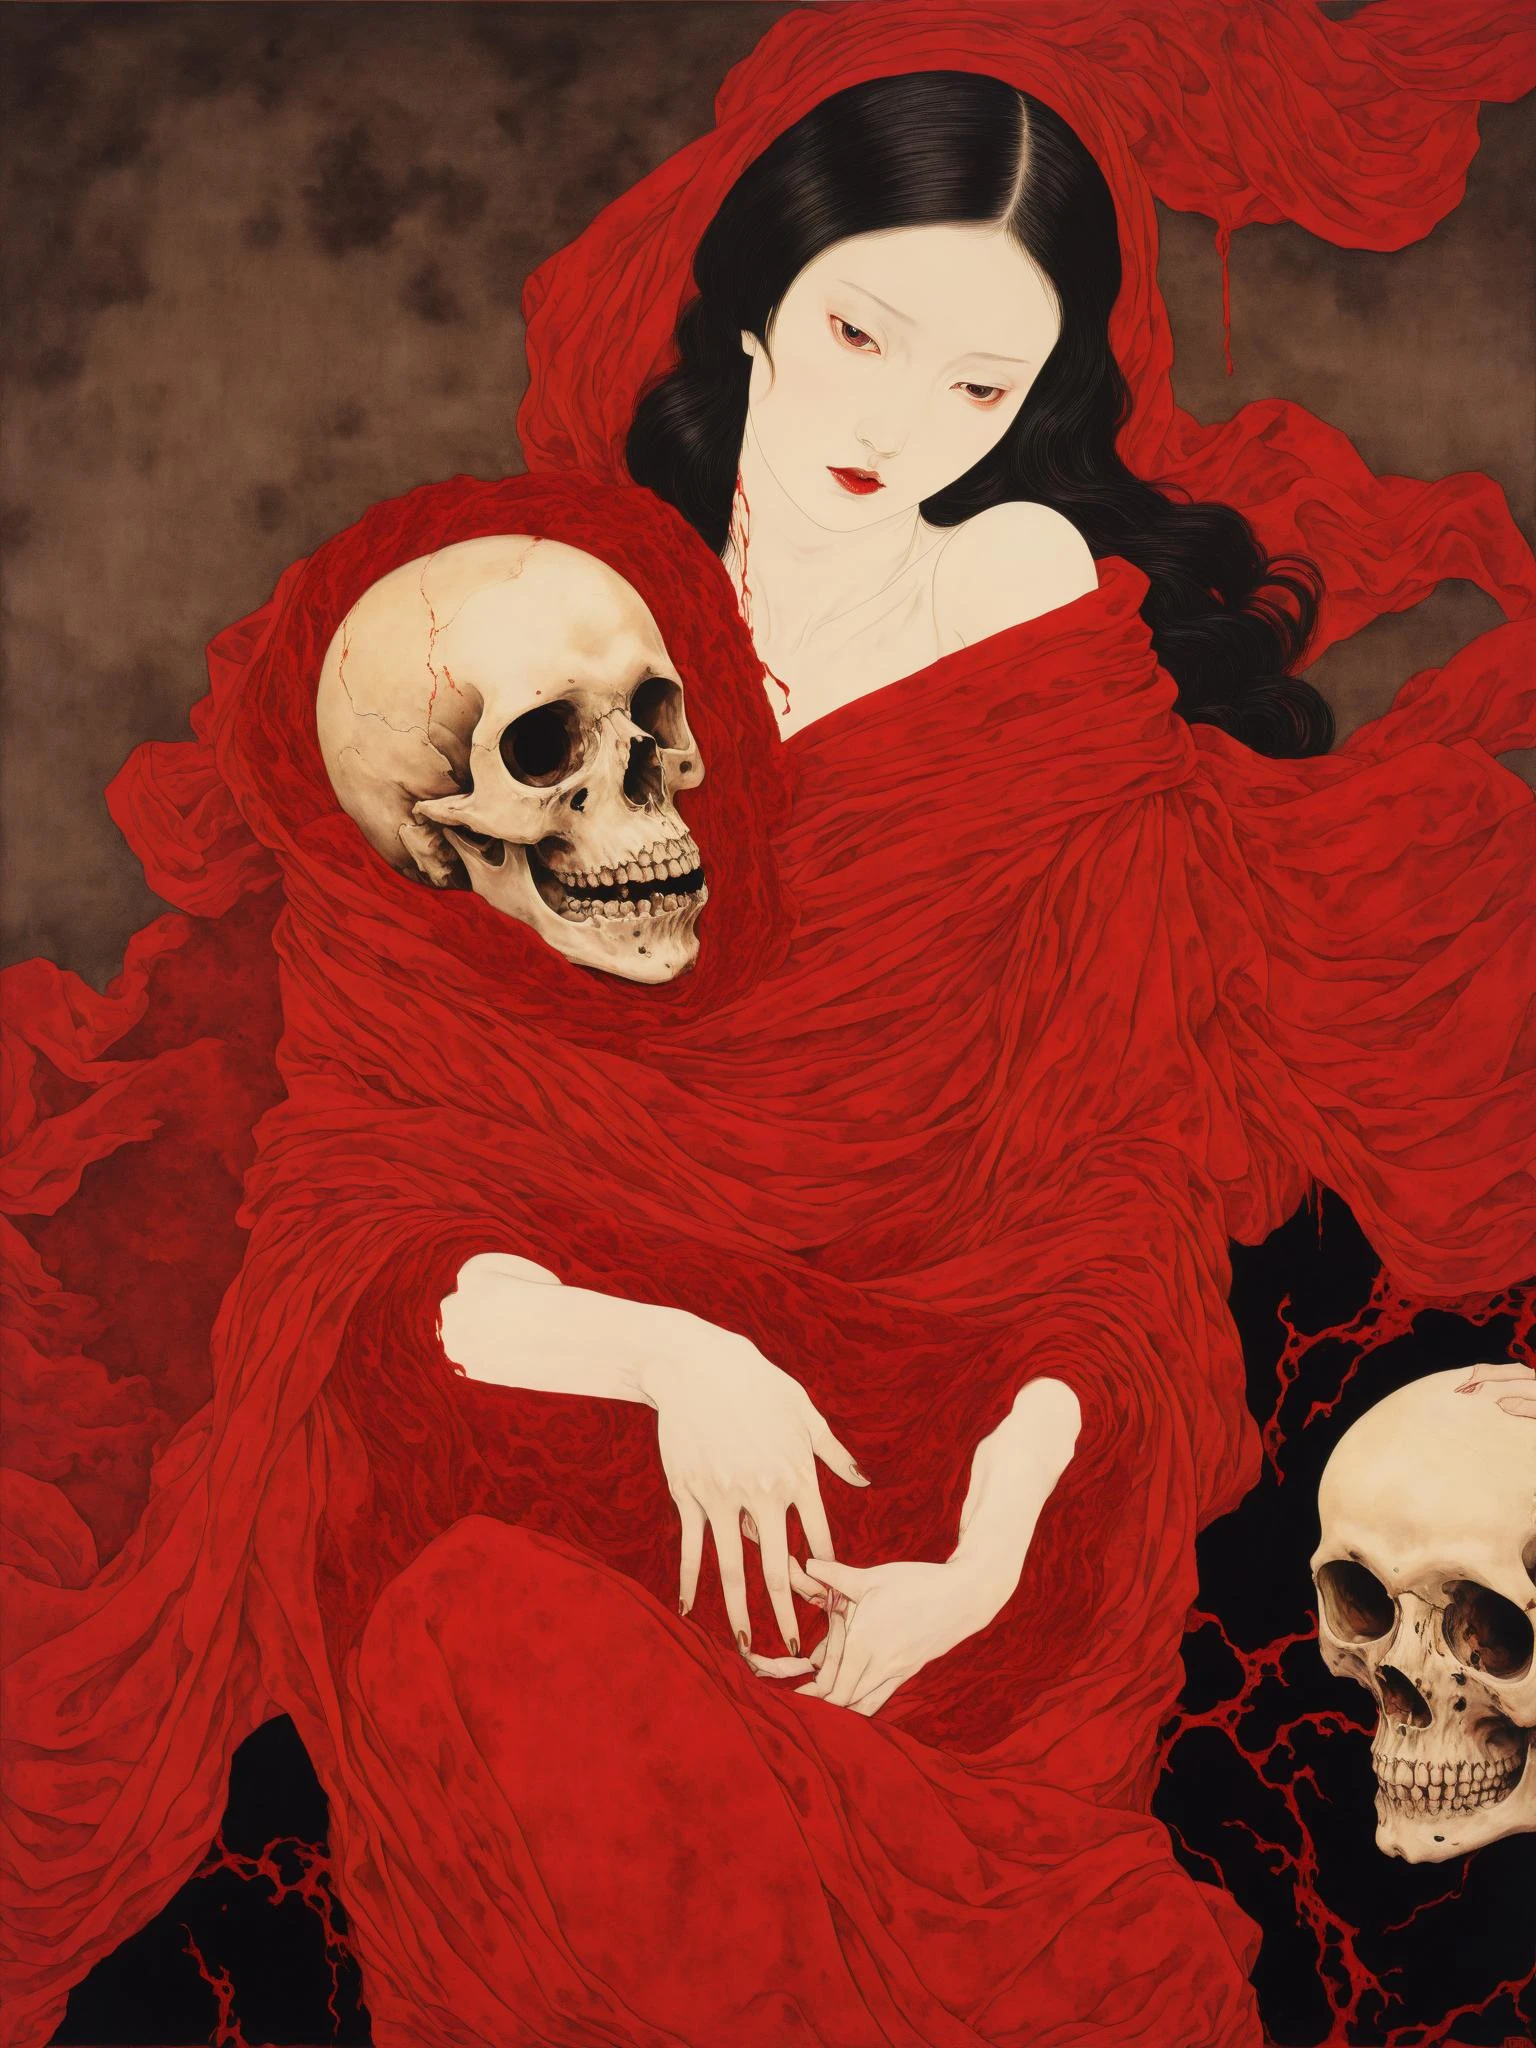 끝없는 피의 빨간 벨벳 담요로 둘러싸인 두개골을 안고 있는 젊은 여성의 공포 그림 , 야마모토 타카토 스타일로